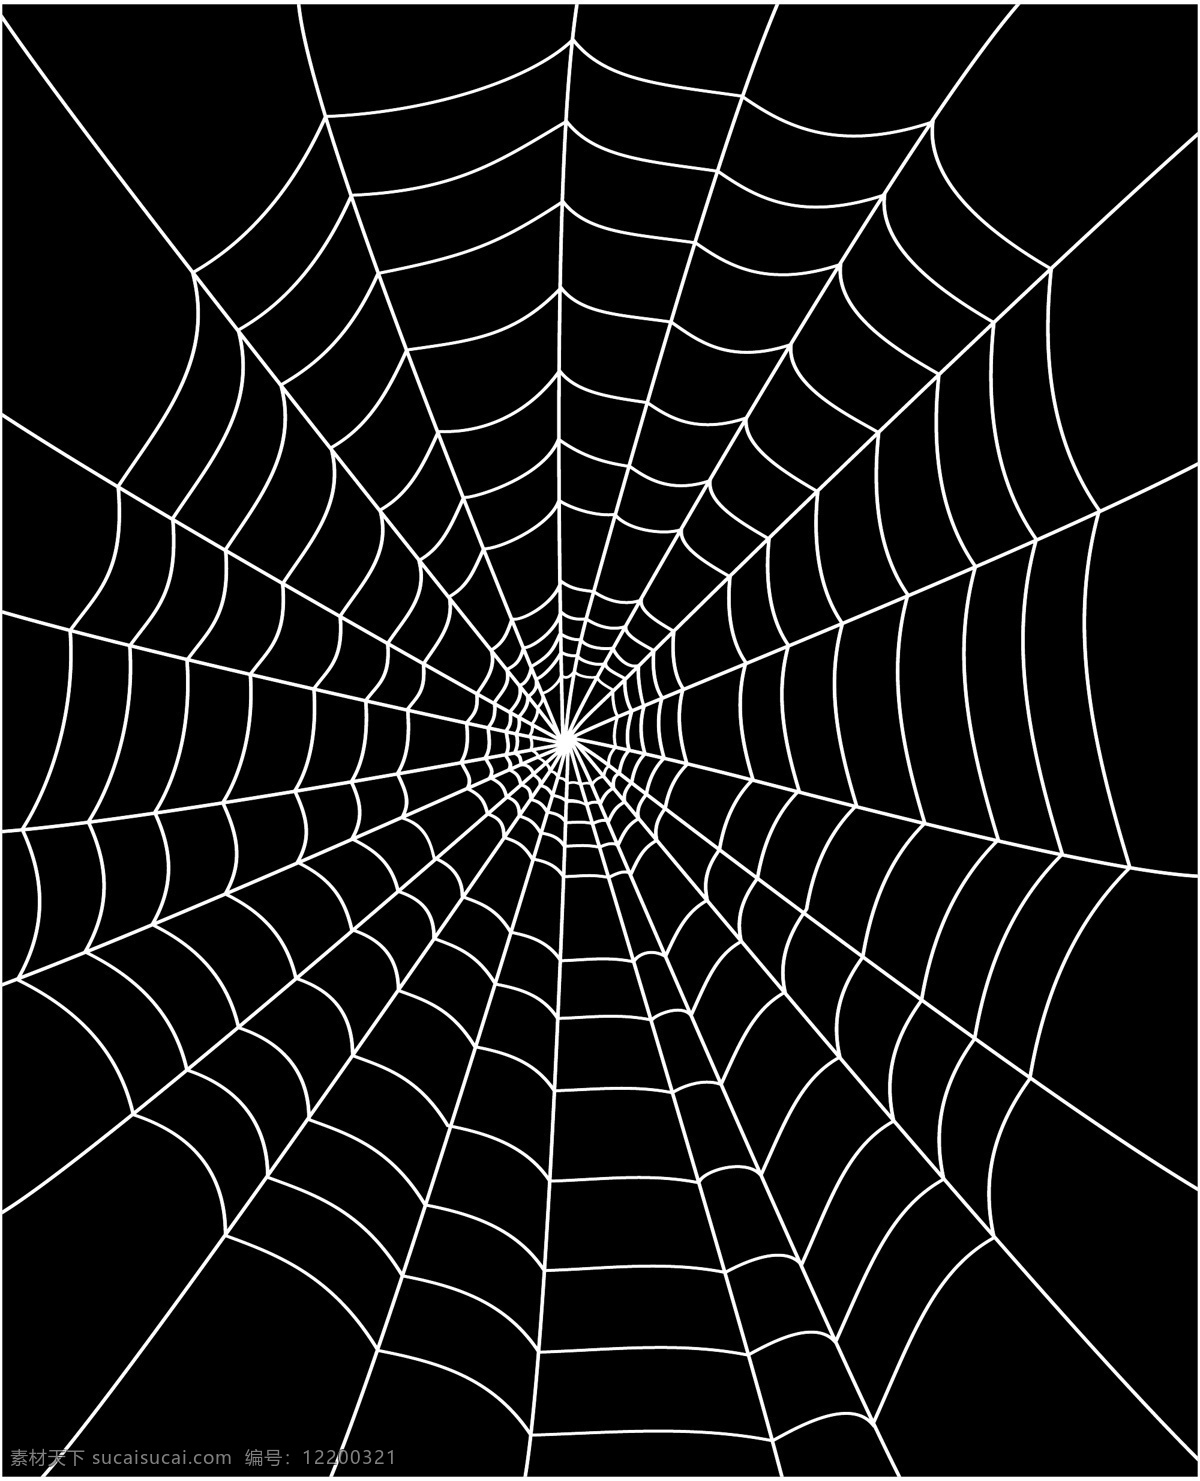 蜘蛛网 矢量 背景 背景矢量 蜘蛛 psd蜘蛛 黑色